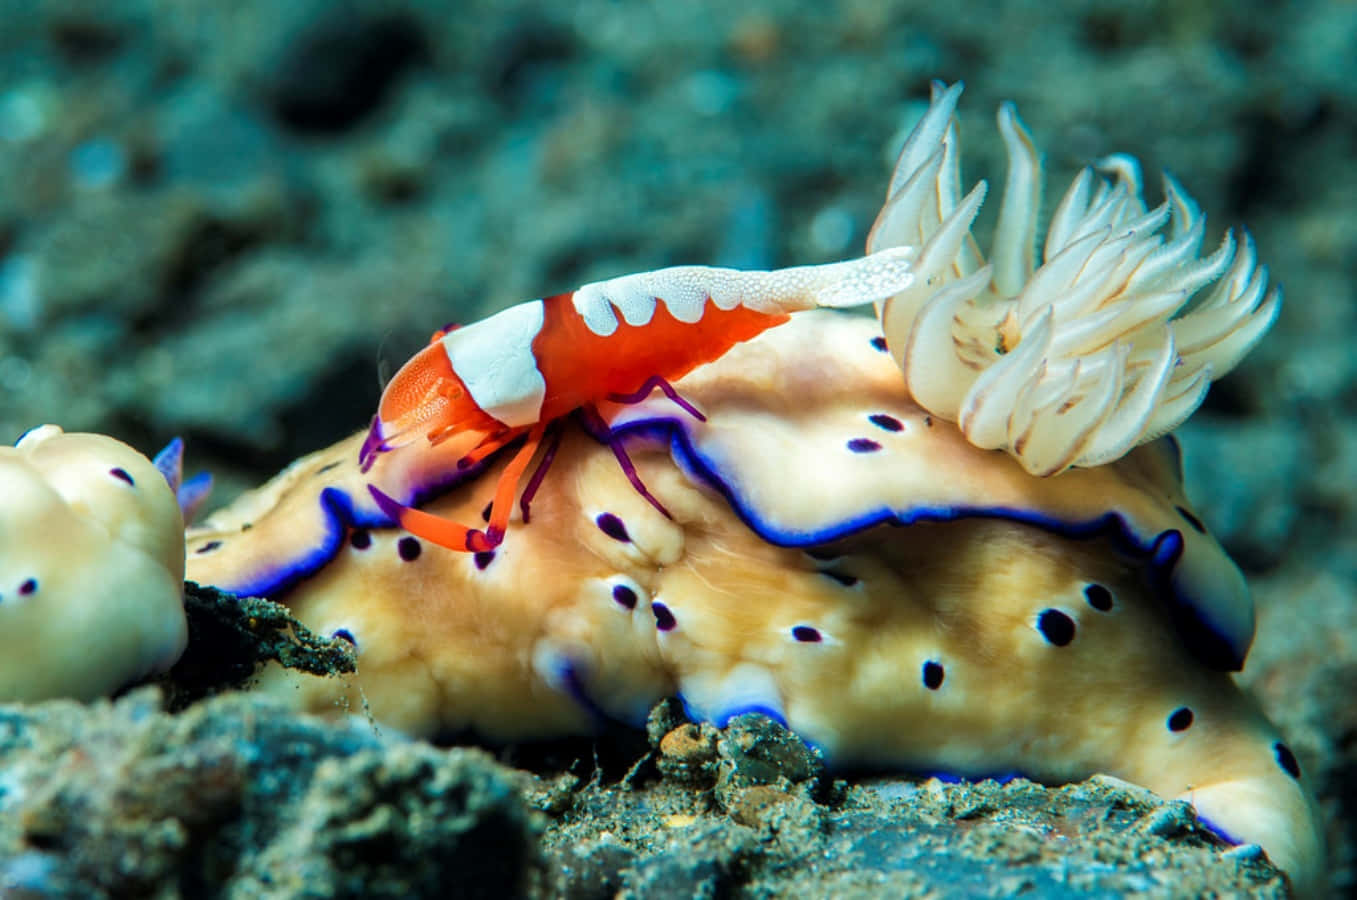 Emperor Shrimp On Sea Slug.jpg Wallpaper